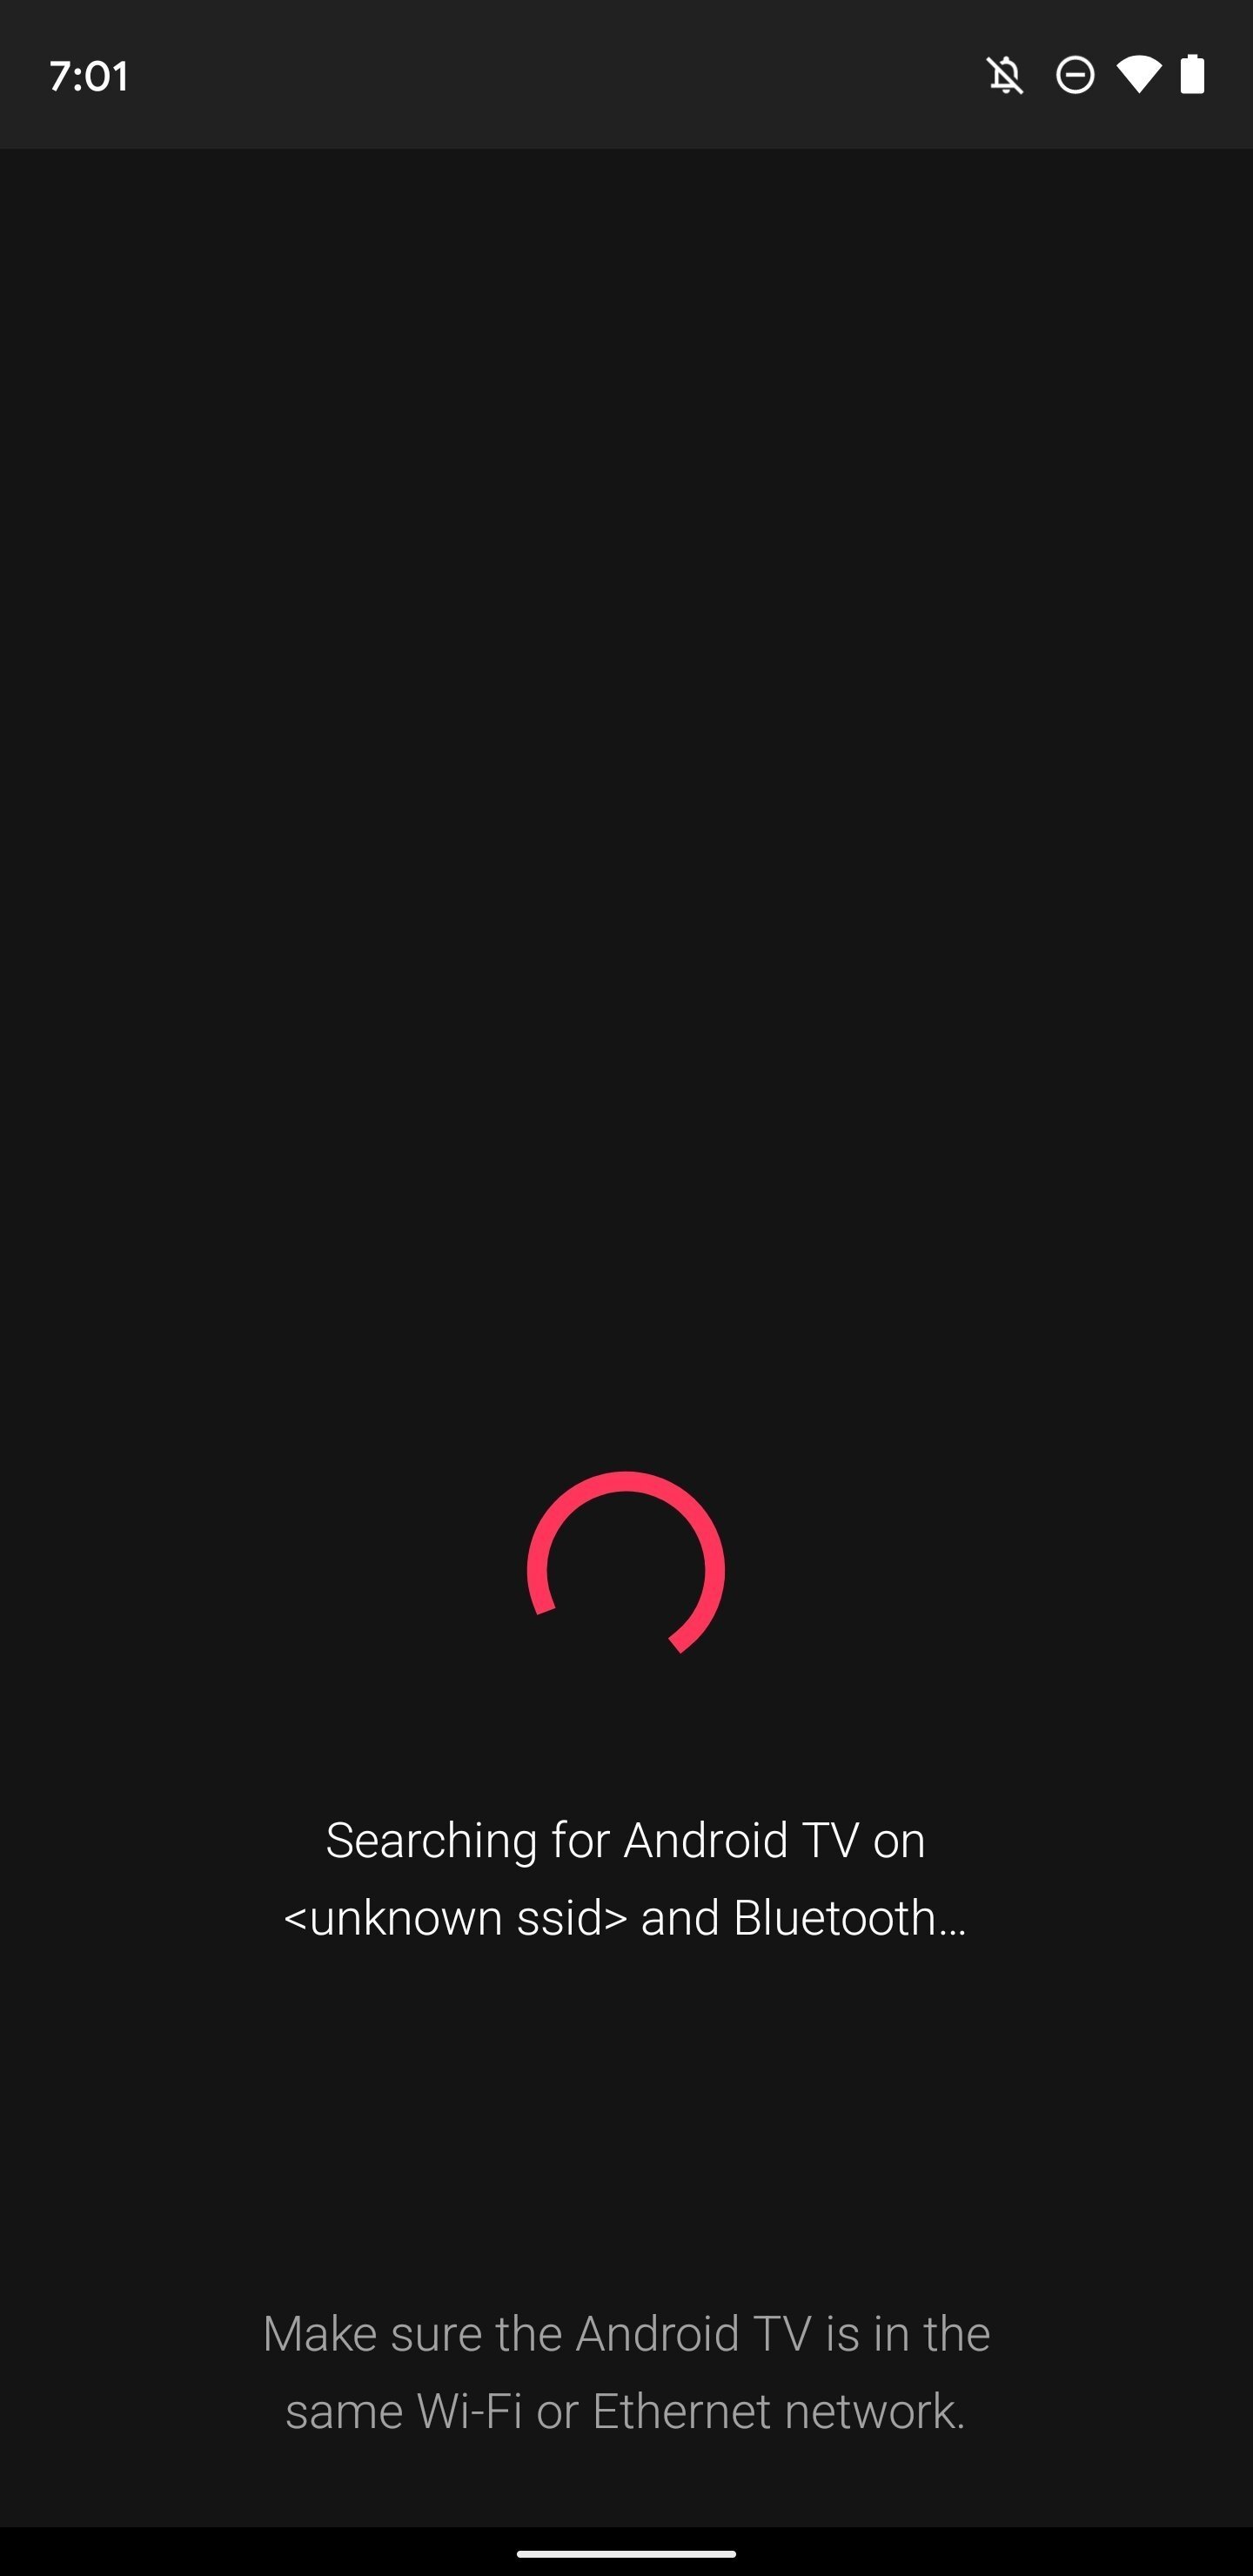 La función de mando a distancia en Google TV aún no funciona correctamente